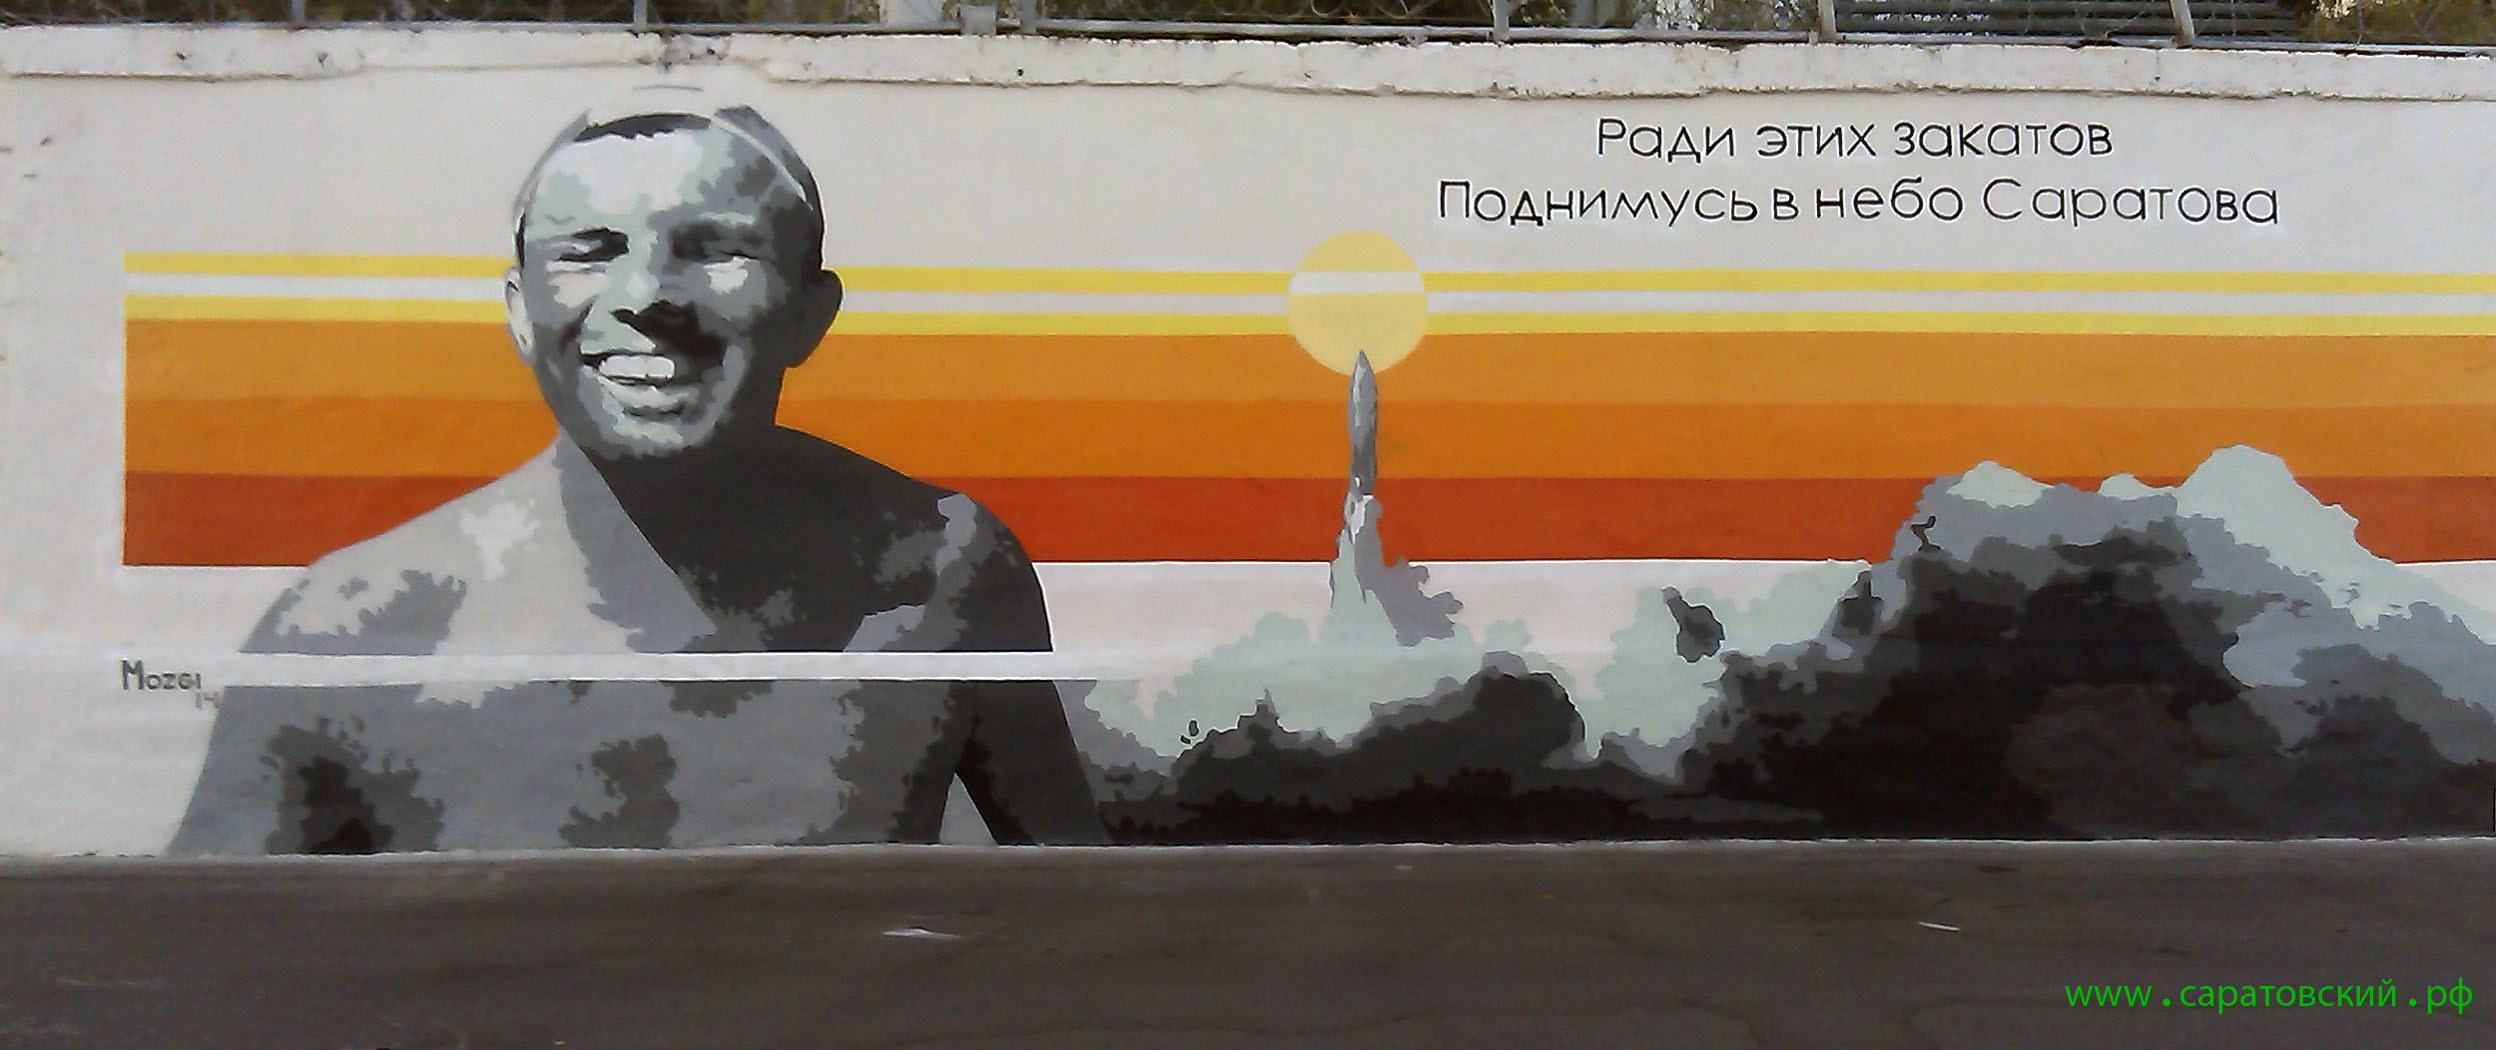 Саратовская набережная, граффити: Юрий Гагарин и Саратов